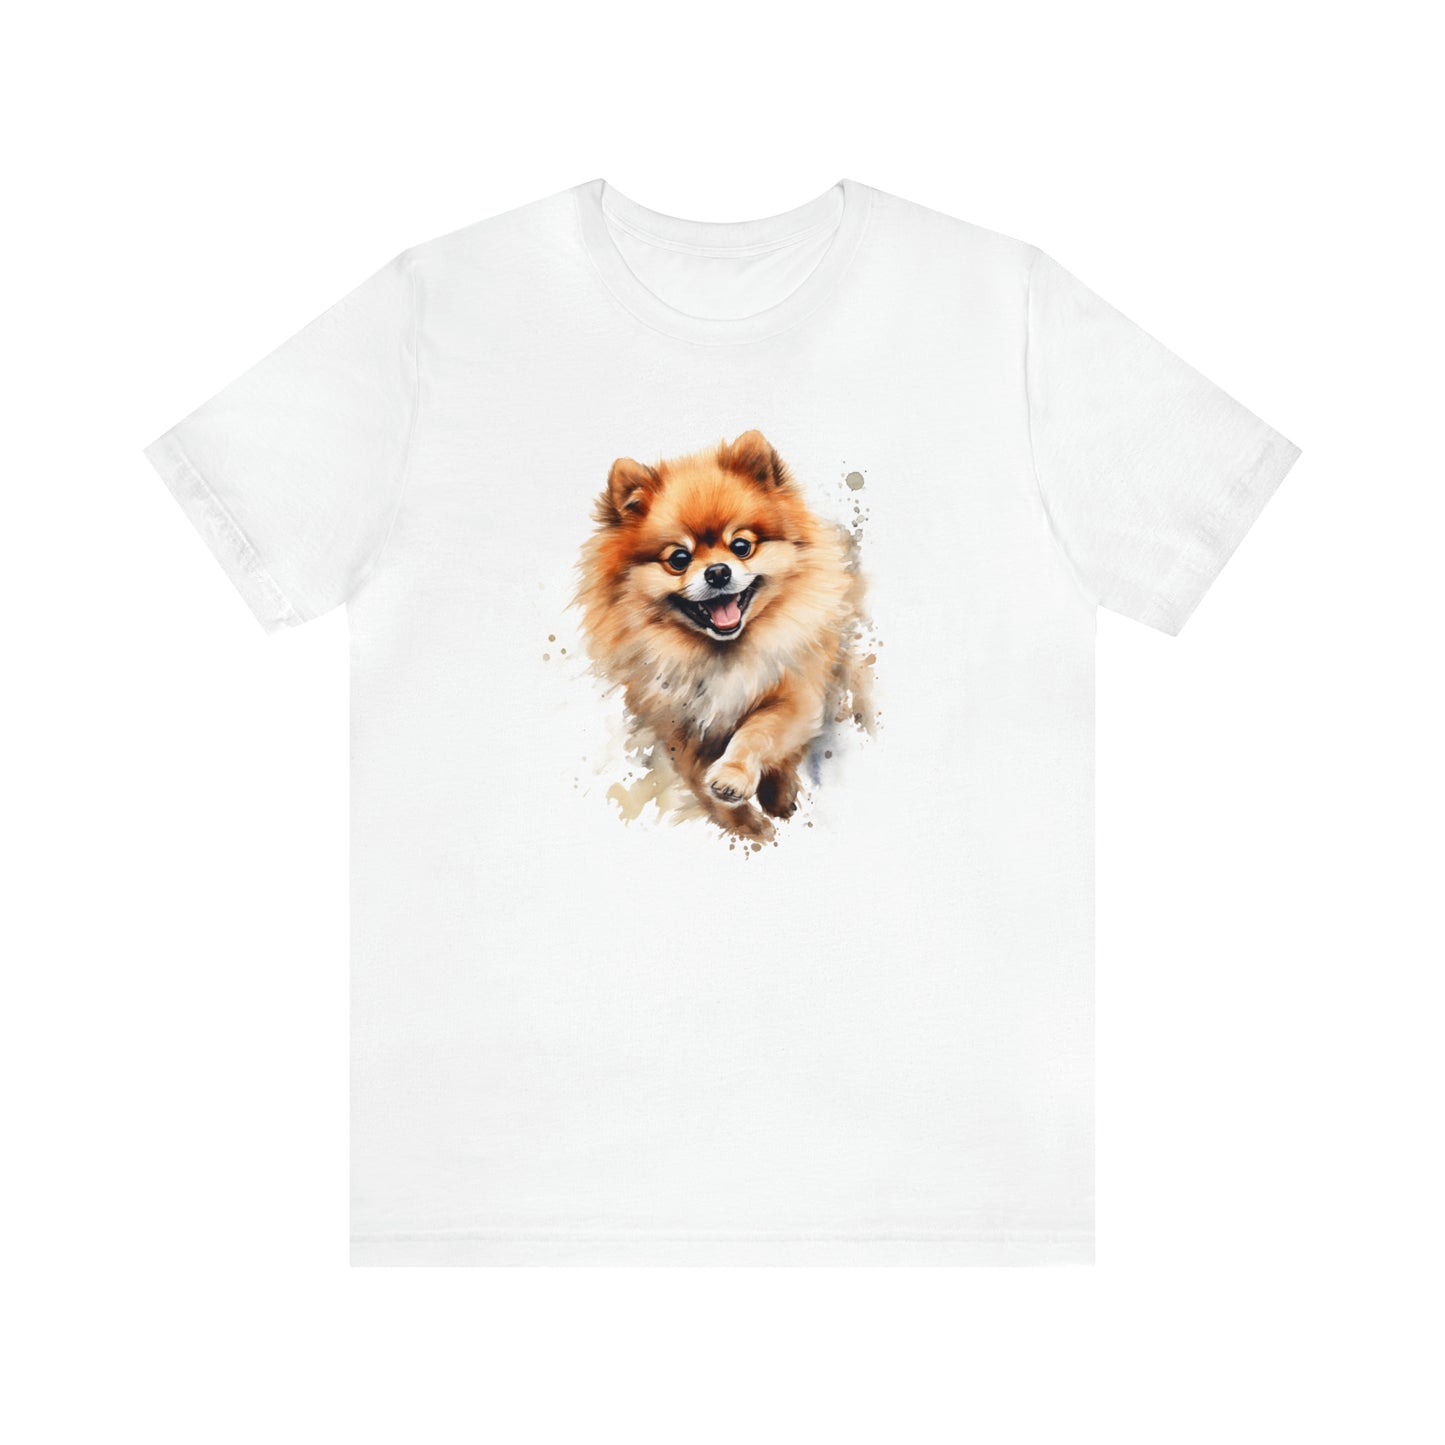 Watercolor Pomeranian T-Shirt